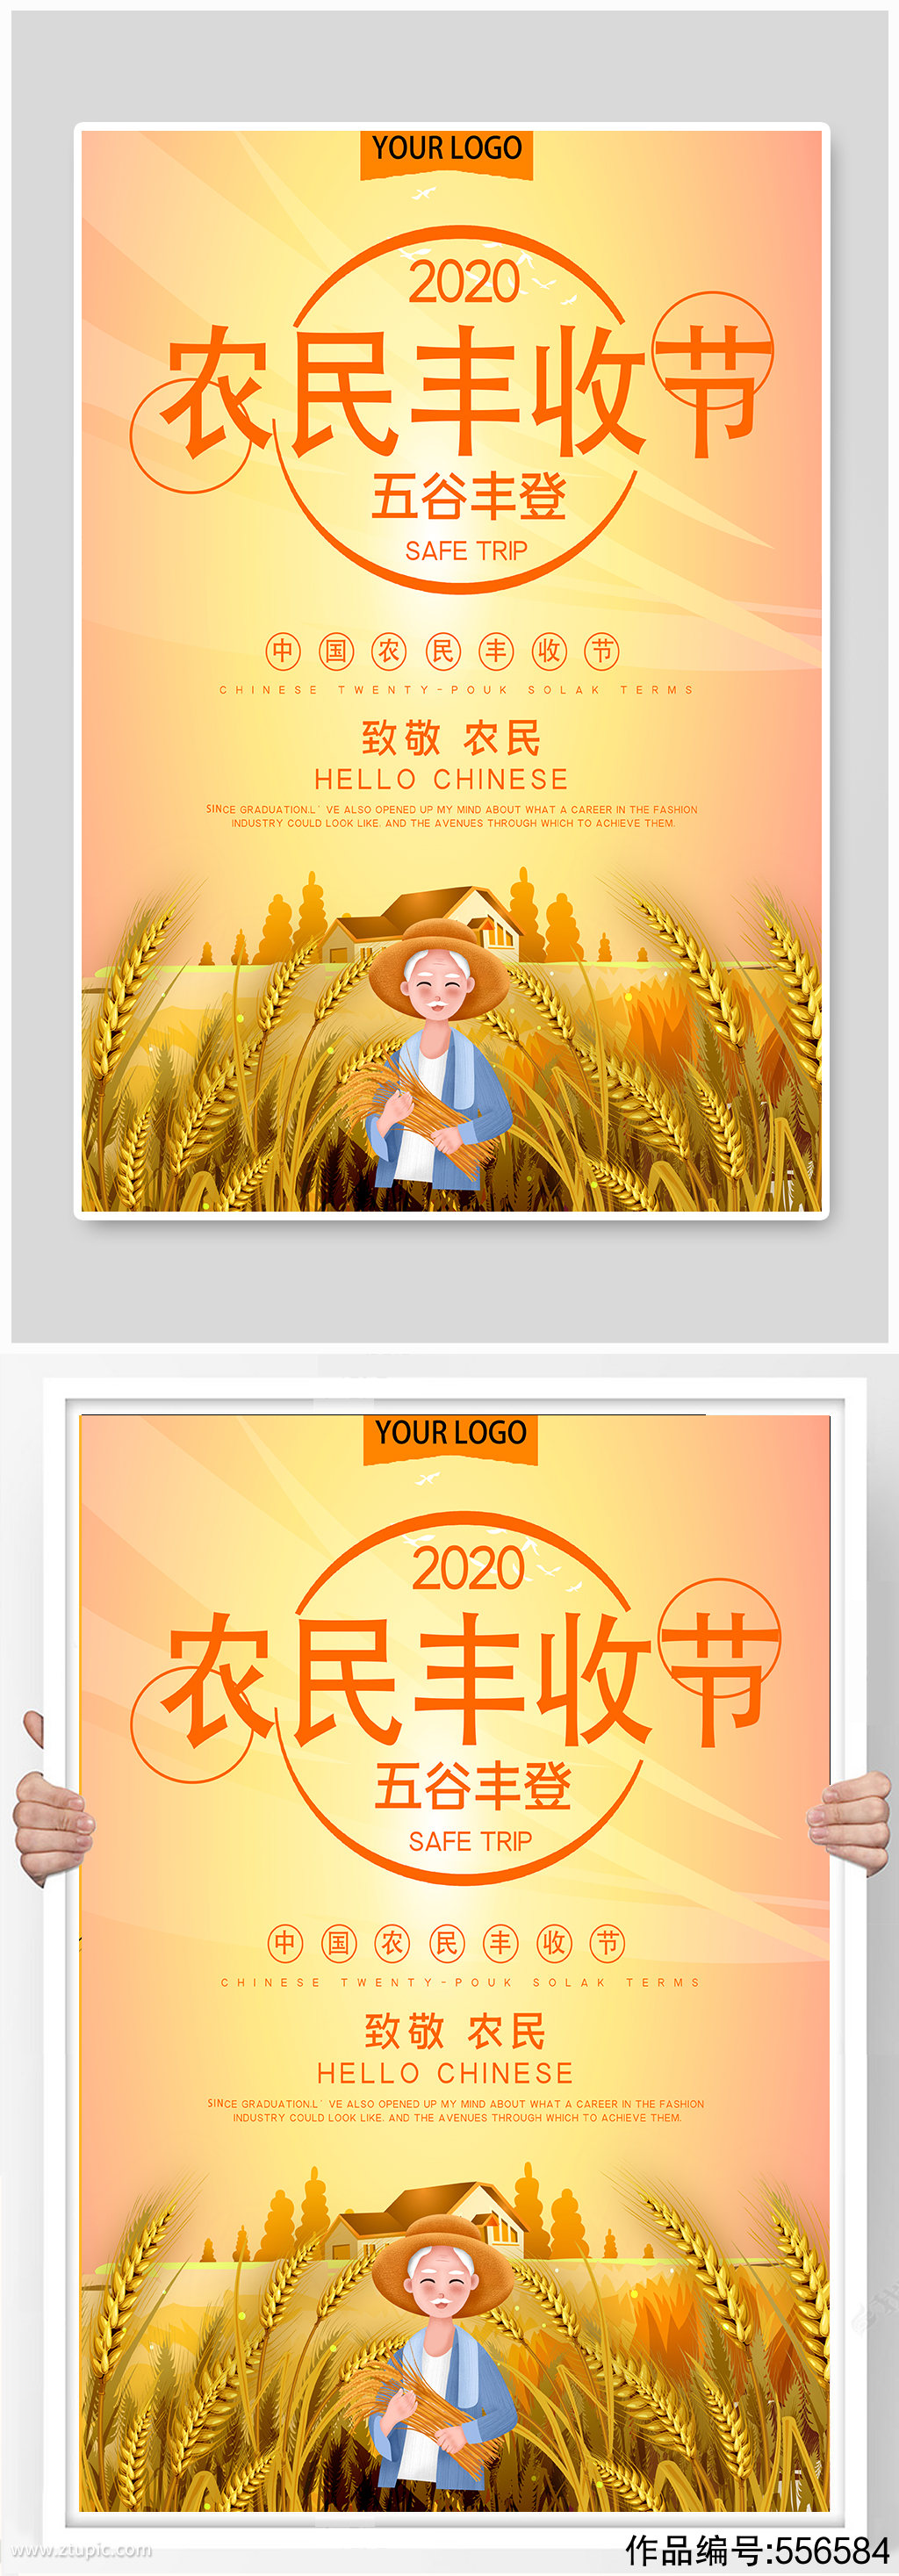 中国农民丰收节公益宣传海报素材